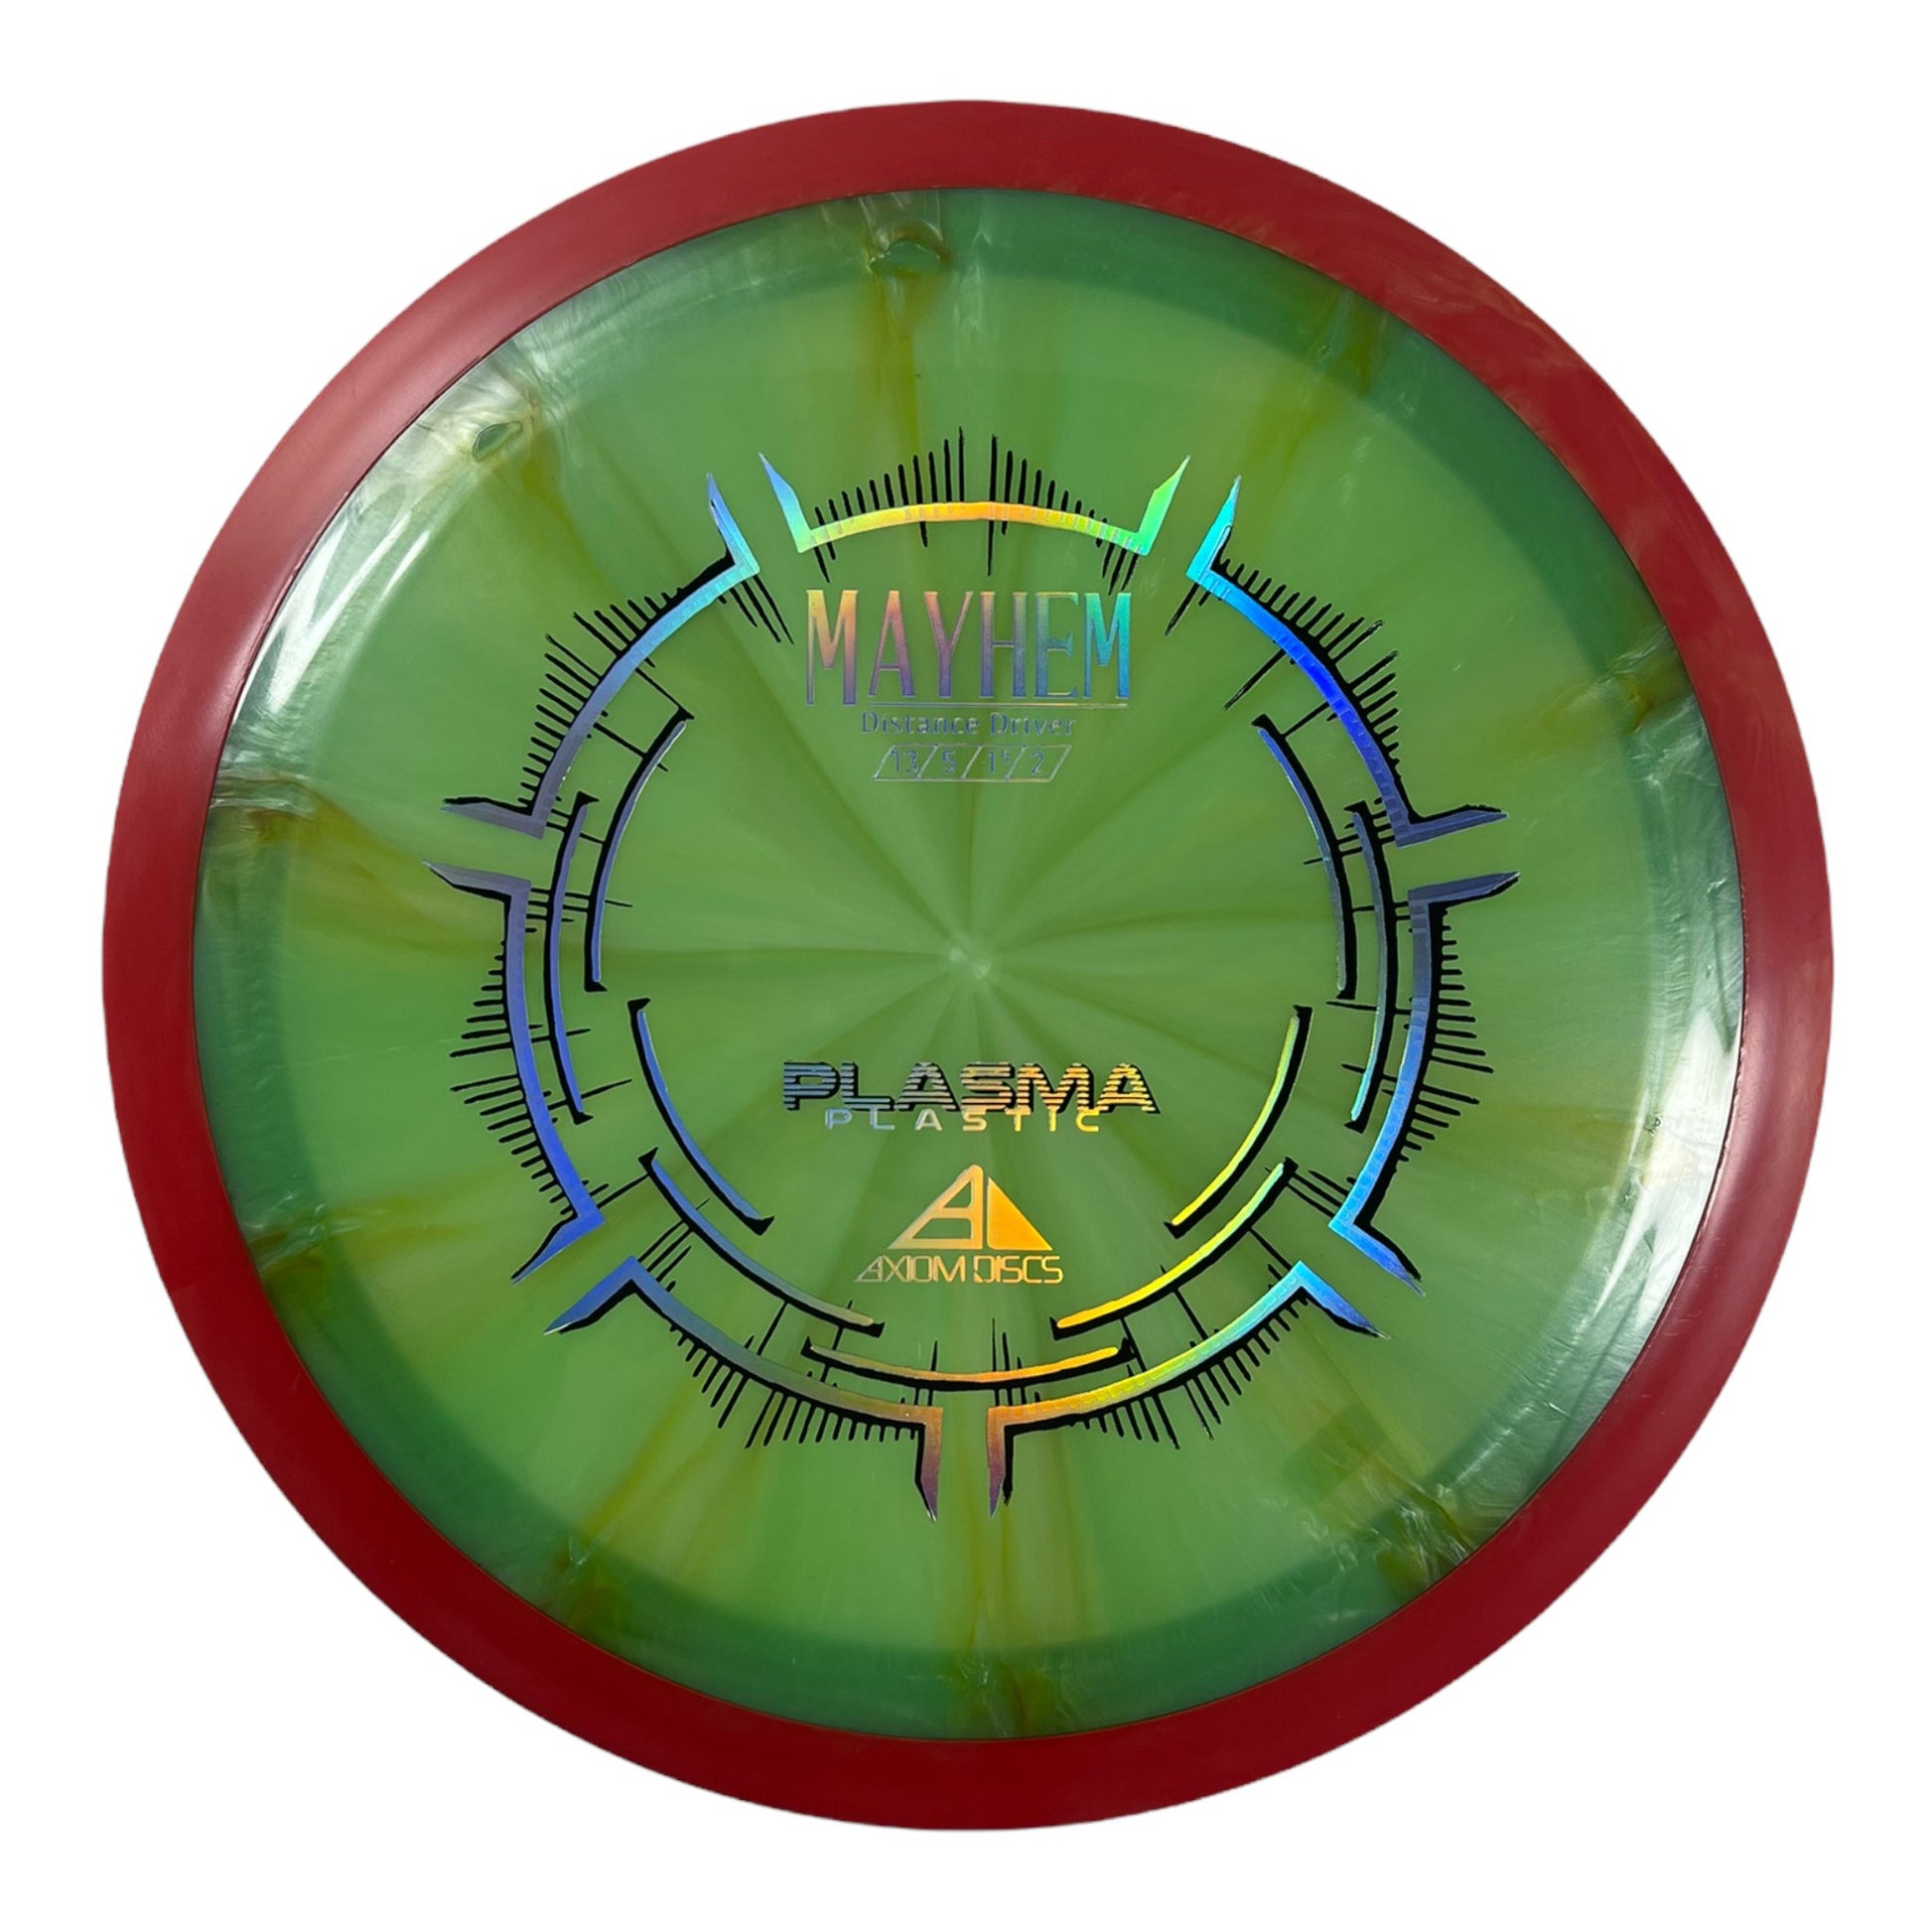 Axiom Discs Mayhem | Plasma | Green/Red 173g Disc Golf